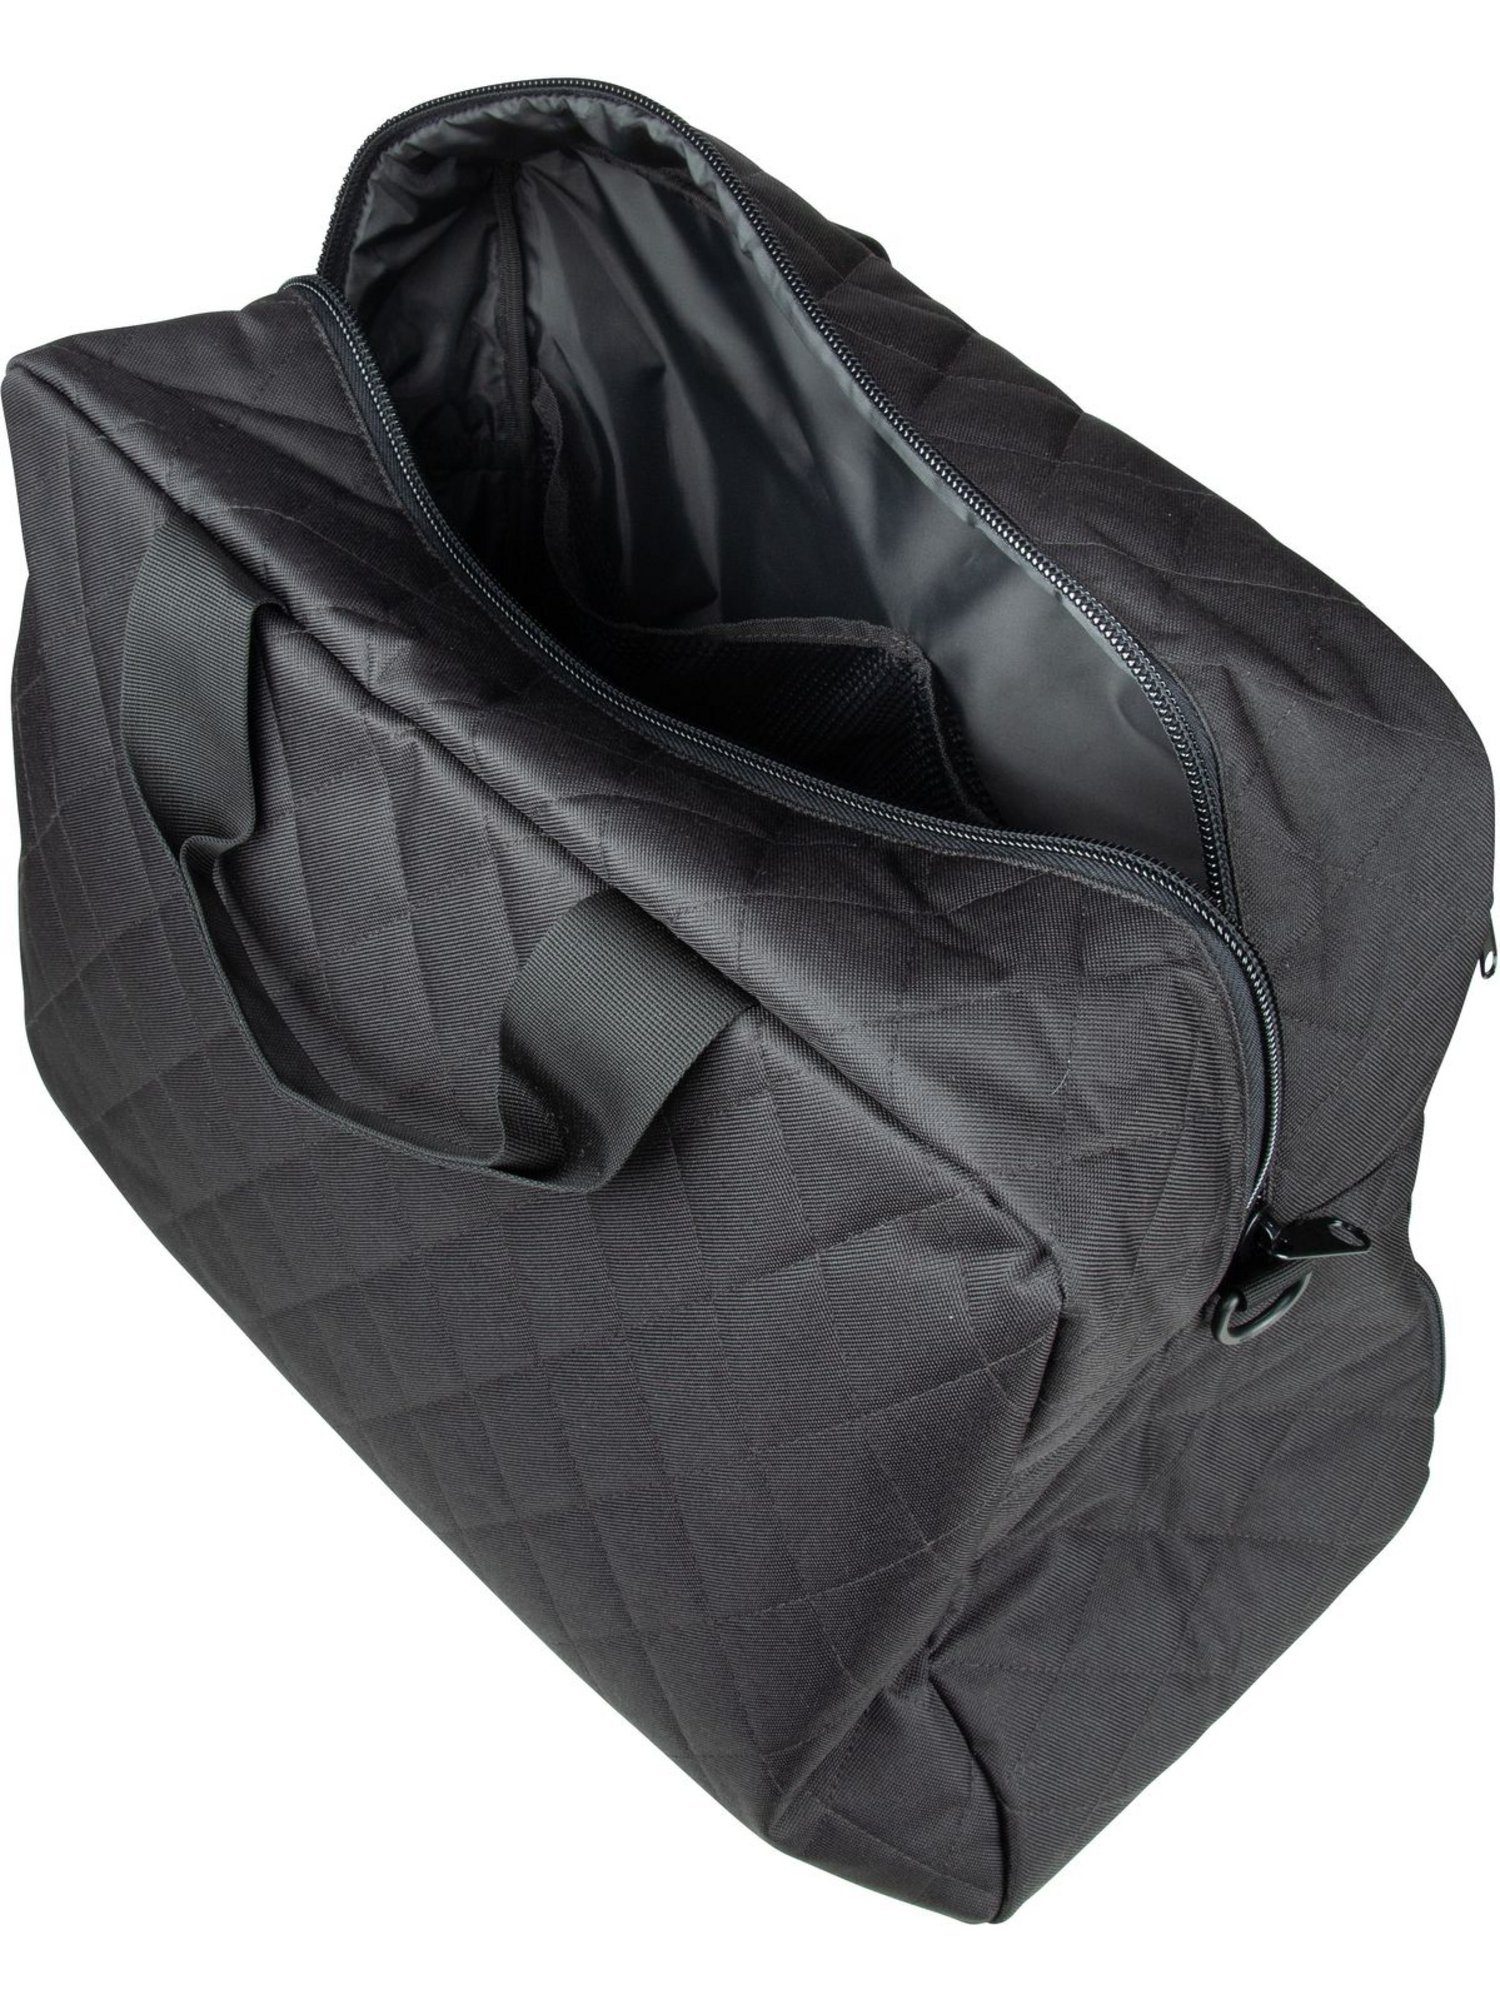 M Rhombus REISENTHEL® Black duffelbag Weekender